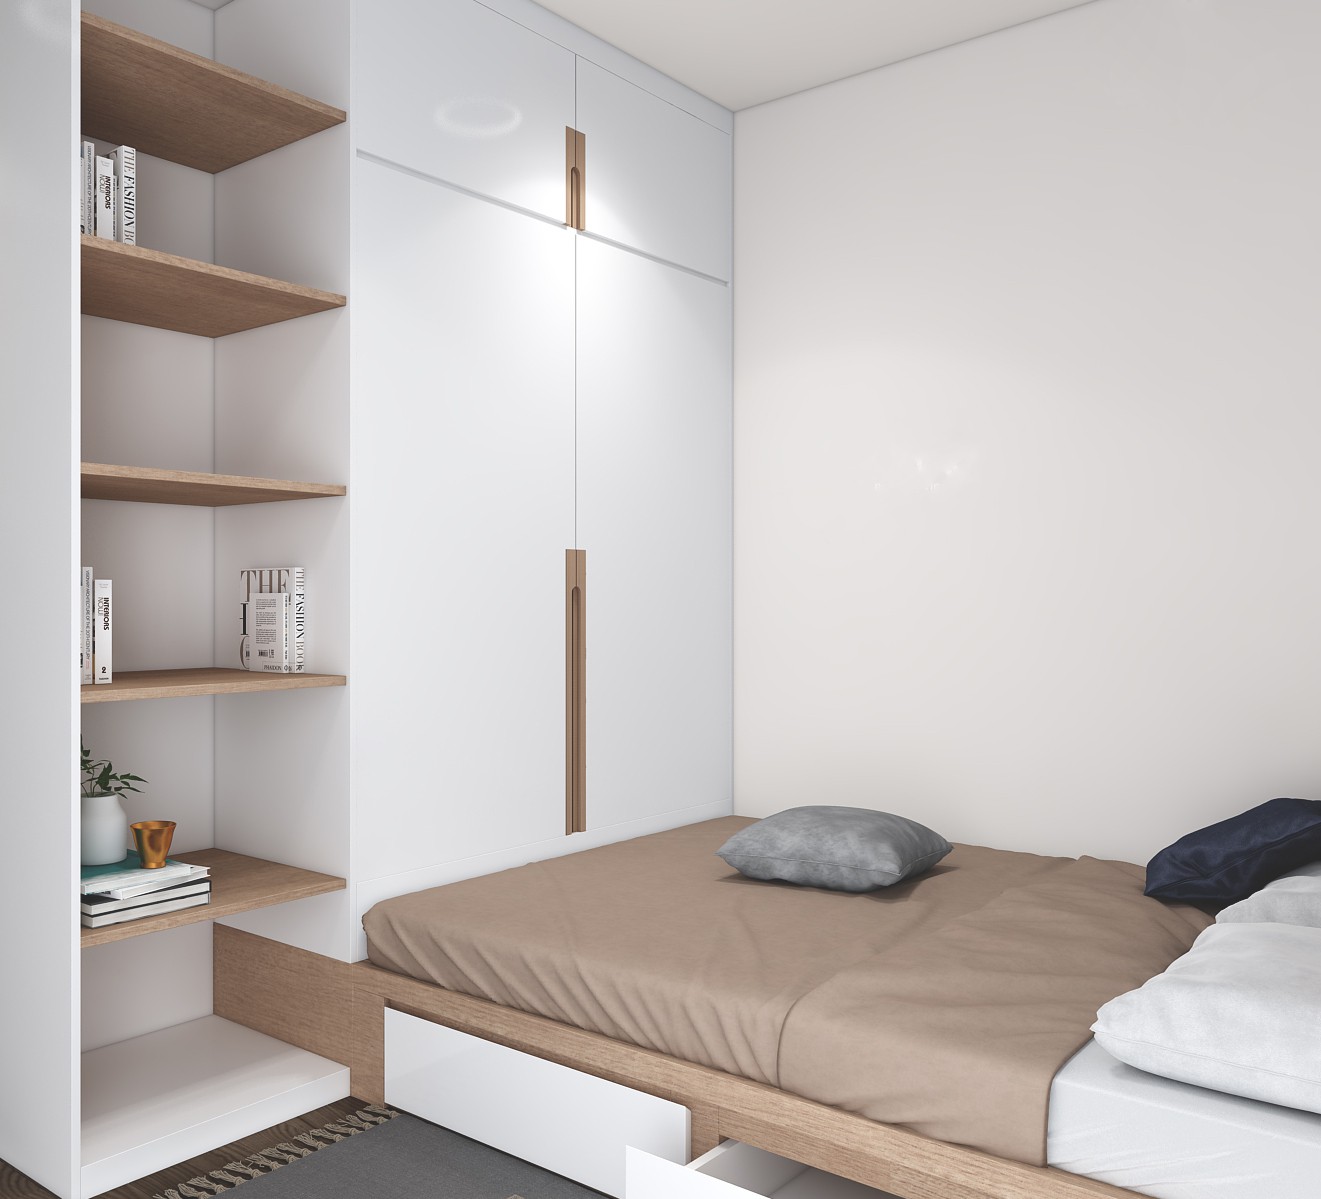 Tư vấn thiết kế phòng ngủ siêu bé với diện tích 8,4m² cho gia đình 5 người - Ảnh 5.